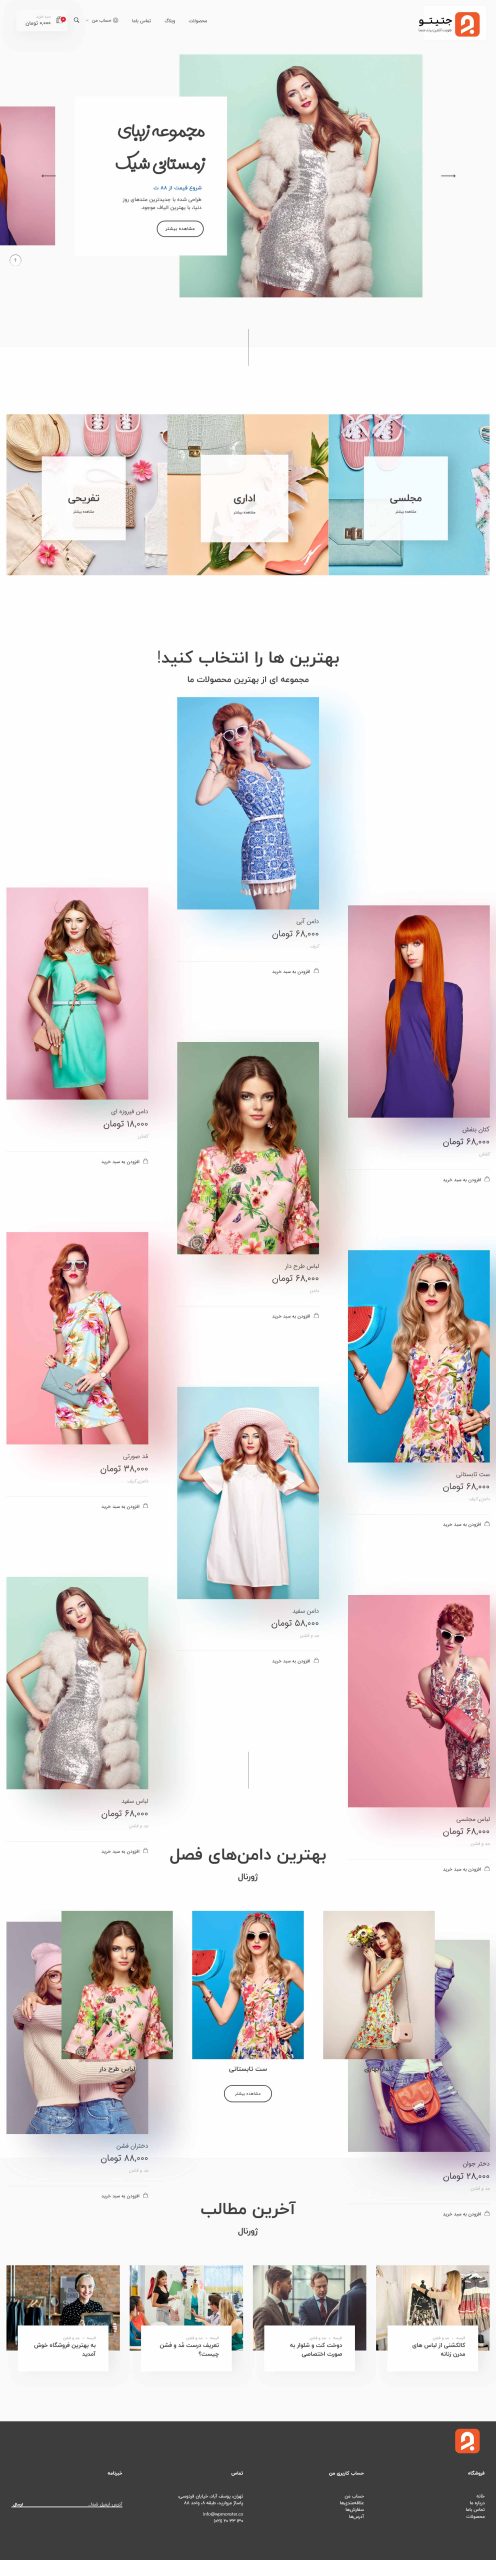 طراحی سایت فروشگاهی لباس زنانه - جتیتو